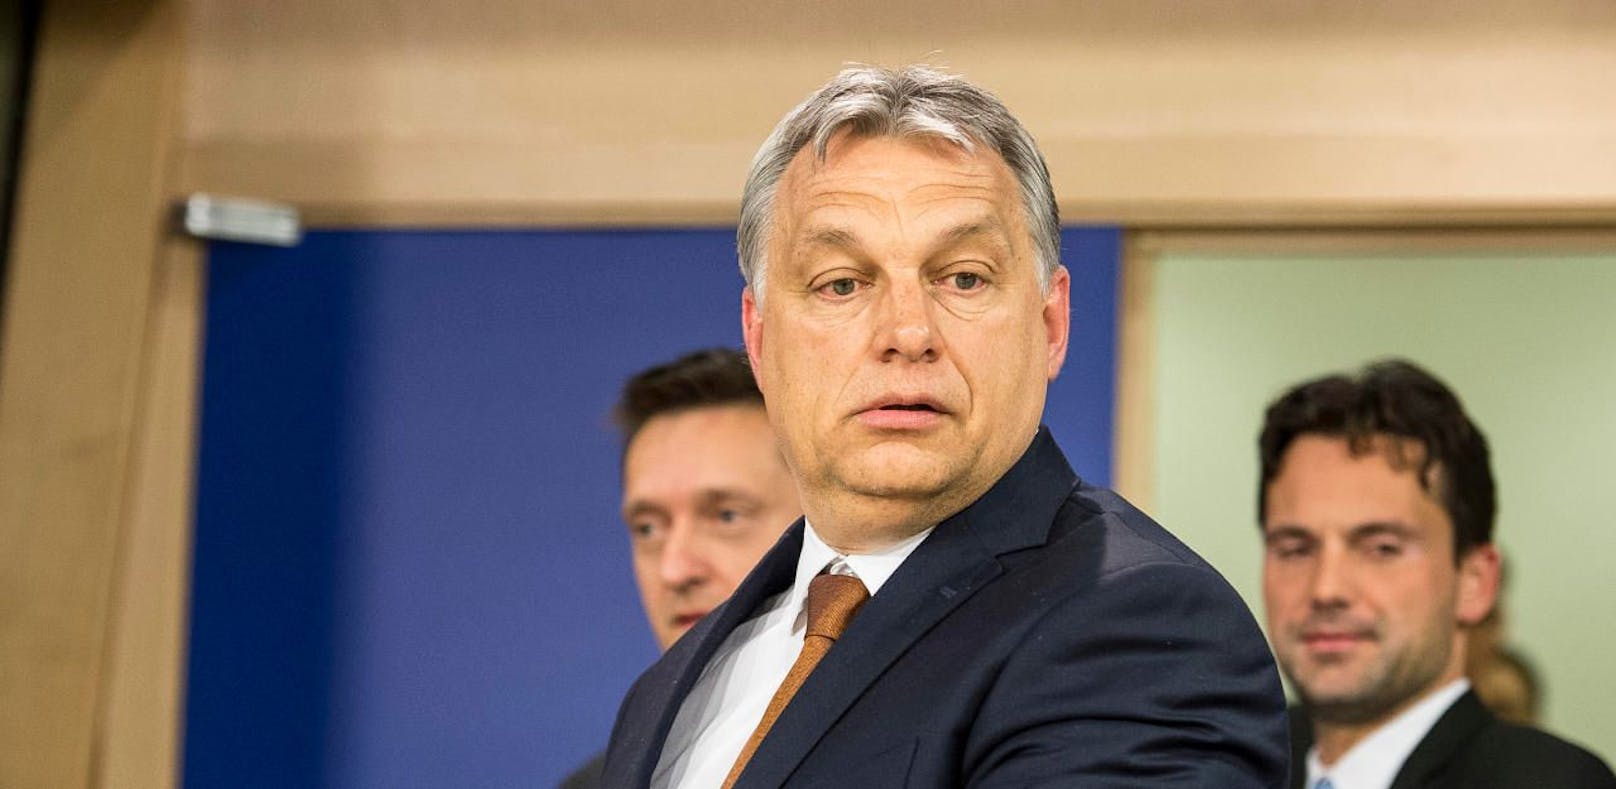 Der ungarische Premierminister Viktor Orban gibt sich bei der Flüchtlingspolitik gern als Hardliner